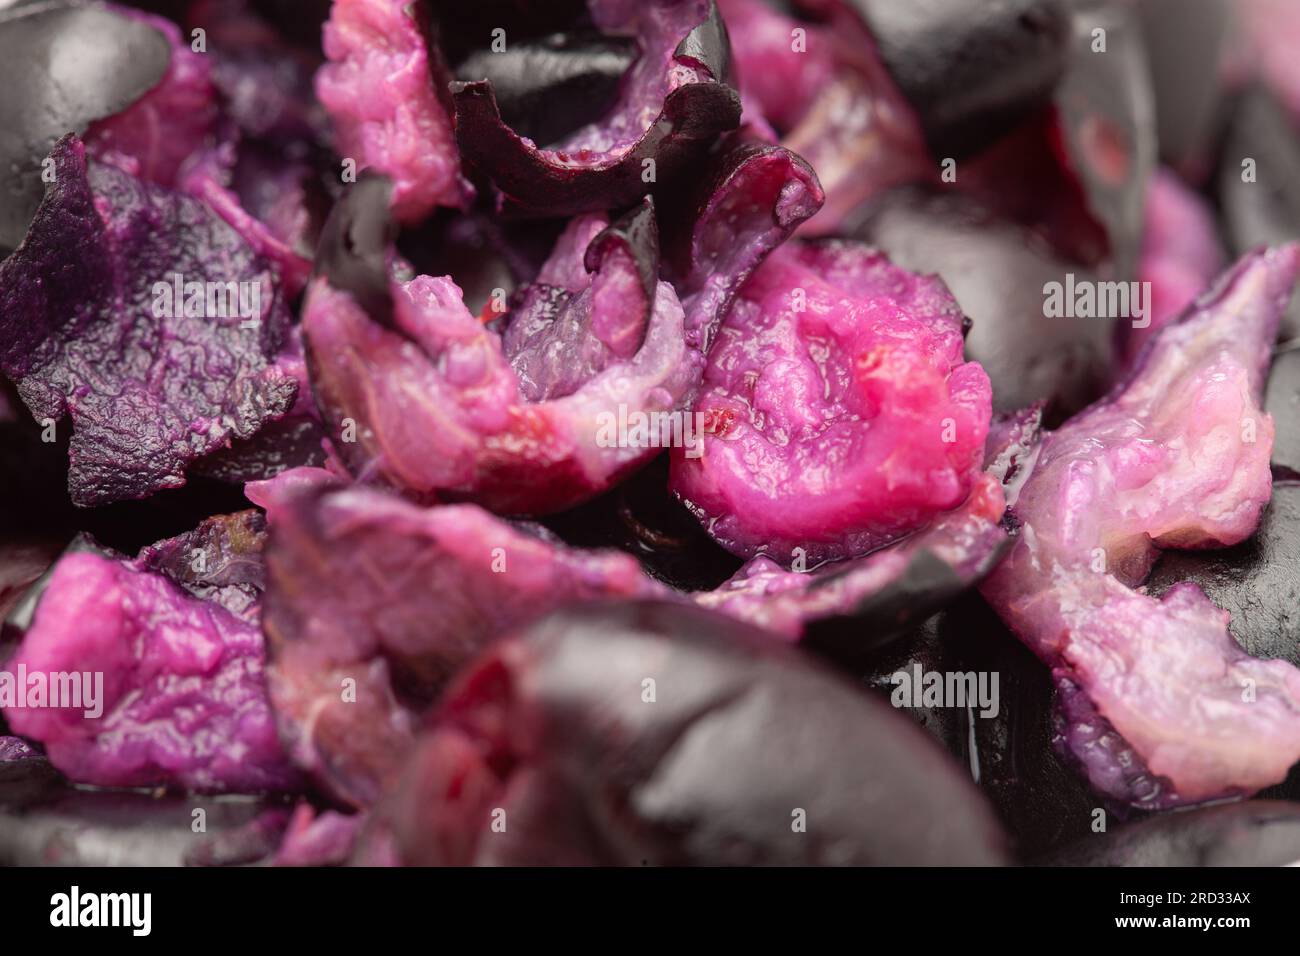 Close-Up of collection of Indian Ayurvedic medicinal fresh organic fruit jamun (Syzygium Cumini) raw pulp or rough pieces Stock Photo